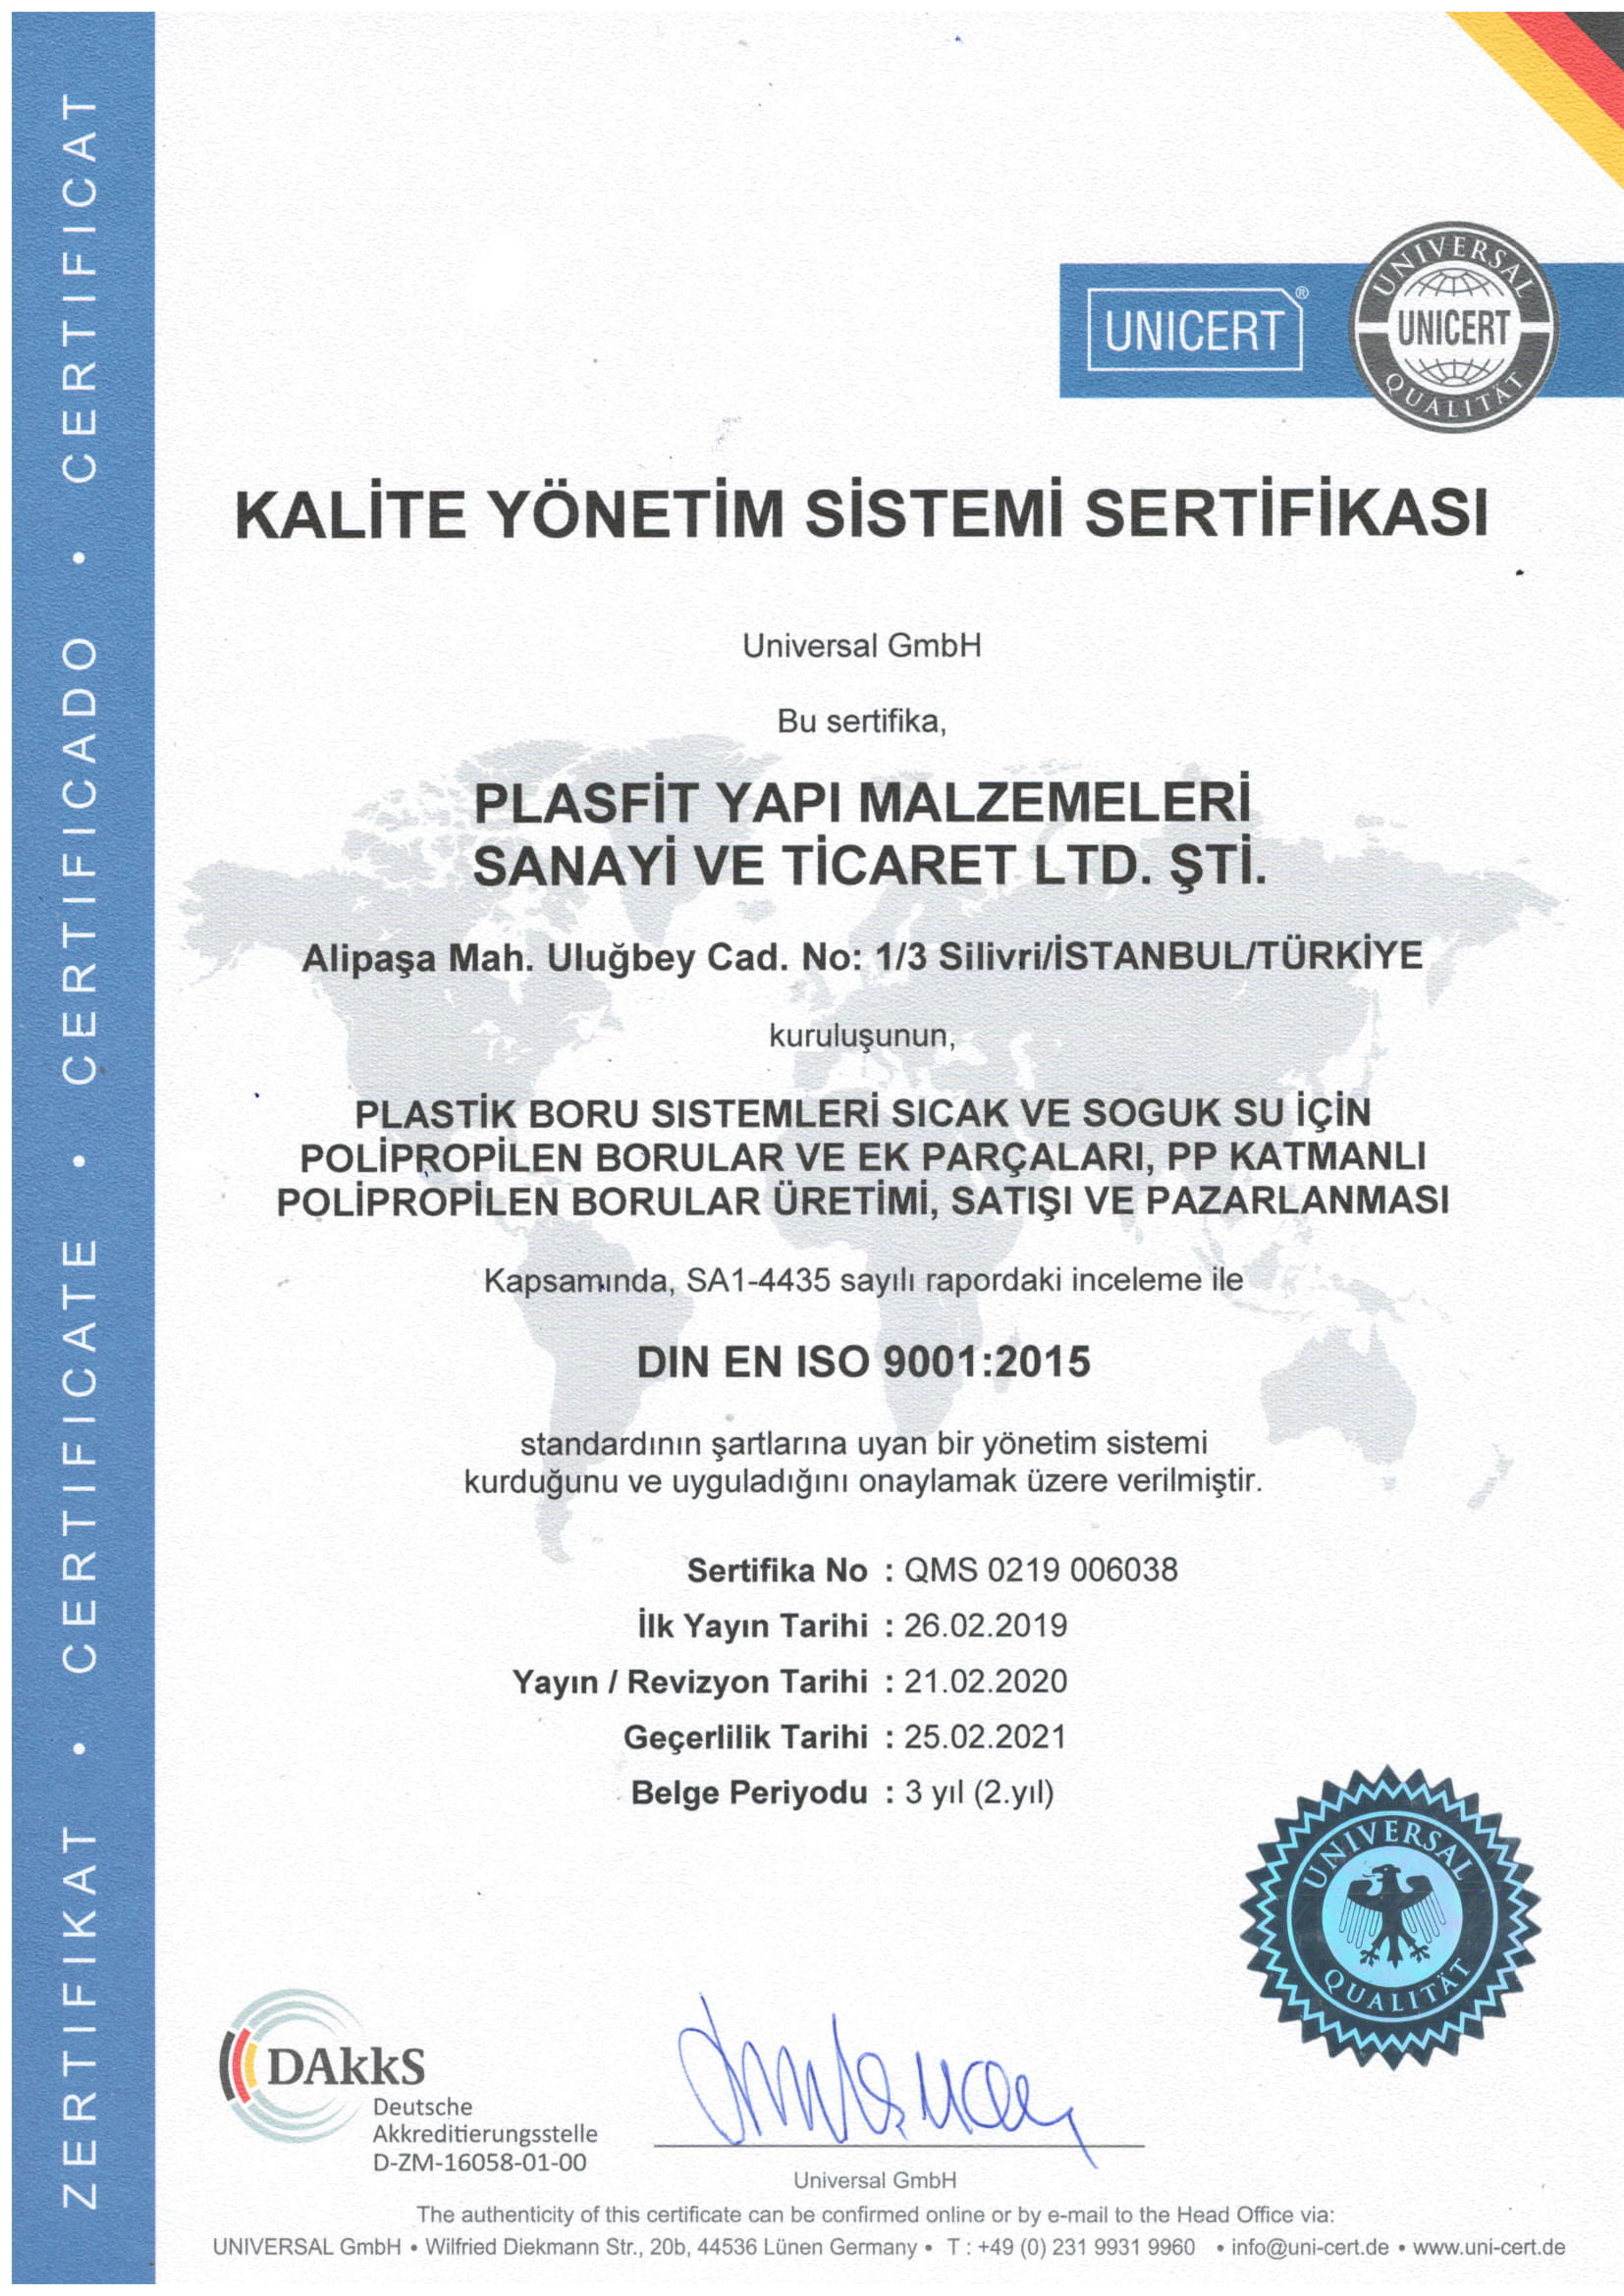 PLASFİT ISO 9001 2015 KALİTE YÖNETİMİ SERTİFİKASI 2020-1